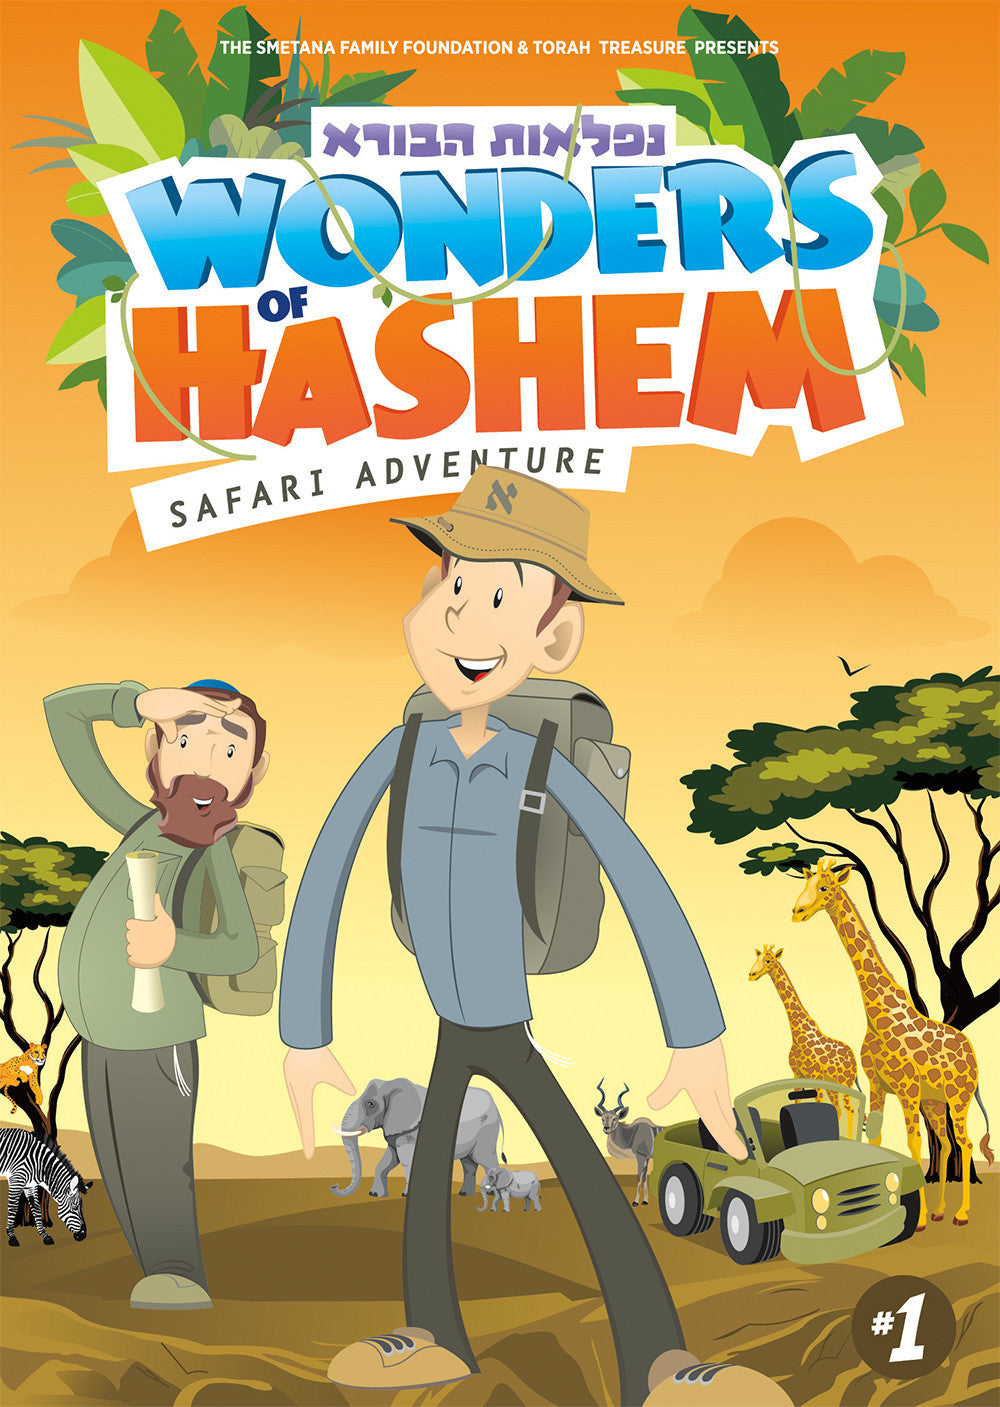 Wonders of Hashem: Safari Adventure